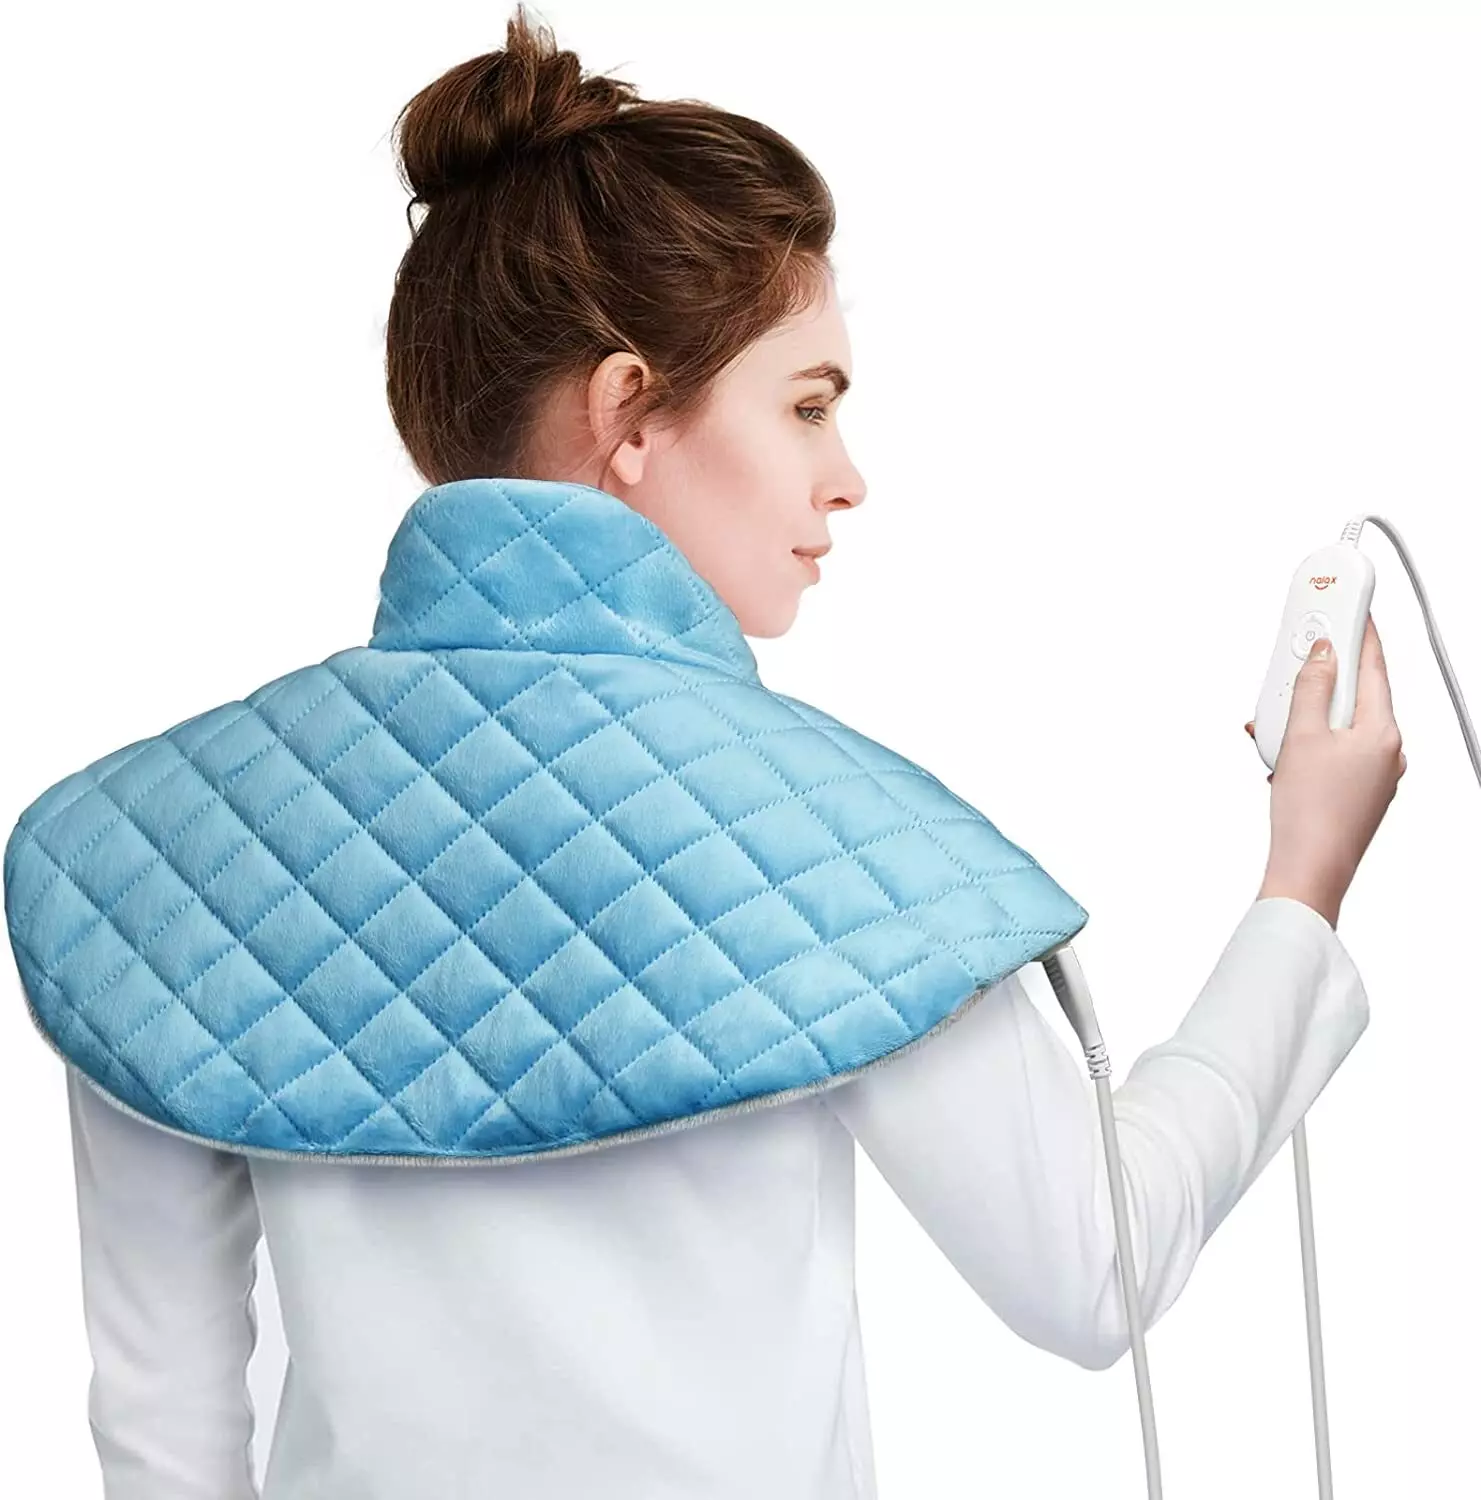 Nalax Coussin chauffant pour le cou et les épaules, coussin chauffant électrique pour le cou pour soulager la douleur, grand bandeau chauffant pour le cou et les épaules avec 6 réglages de chaleur, arrêt automatique, contrôleur d'affichage LCD 1